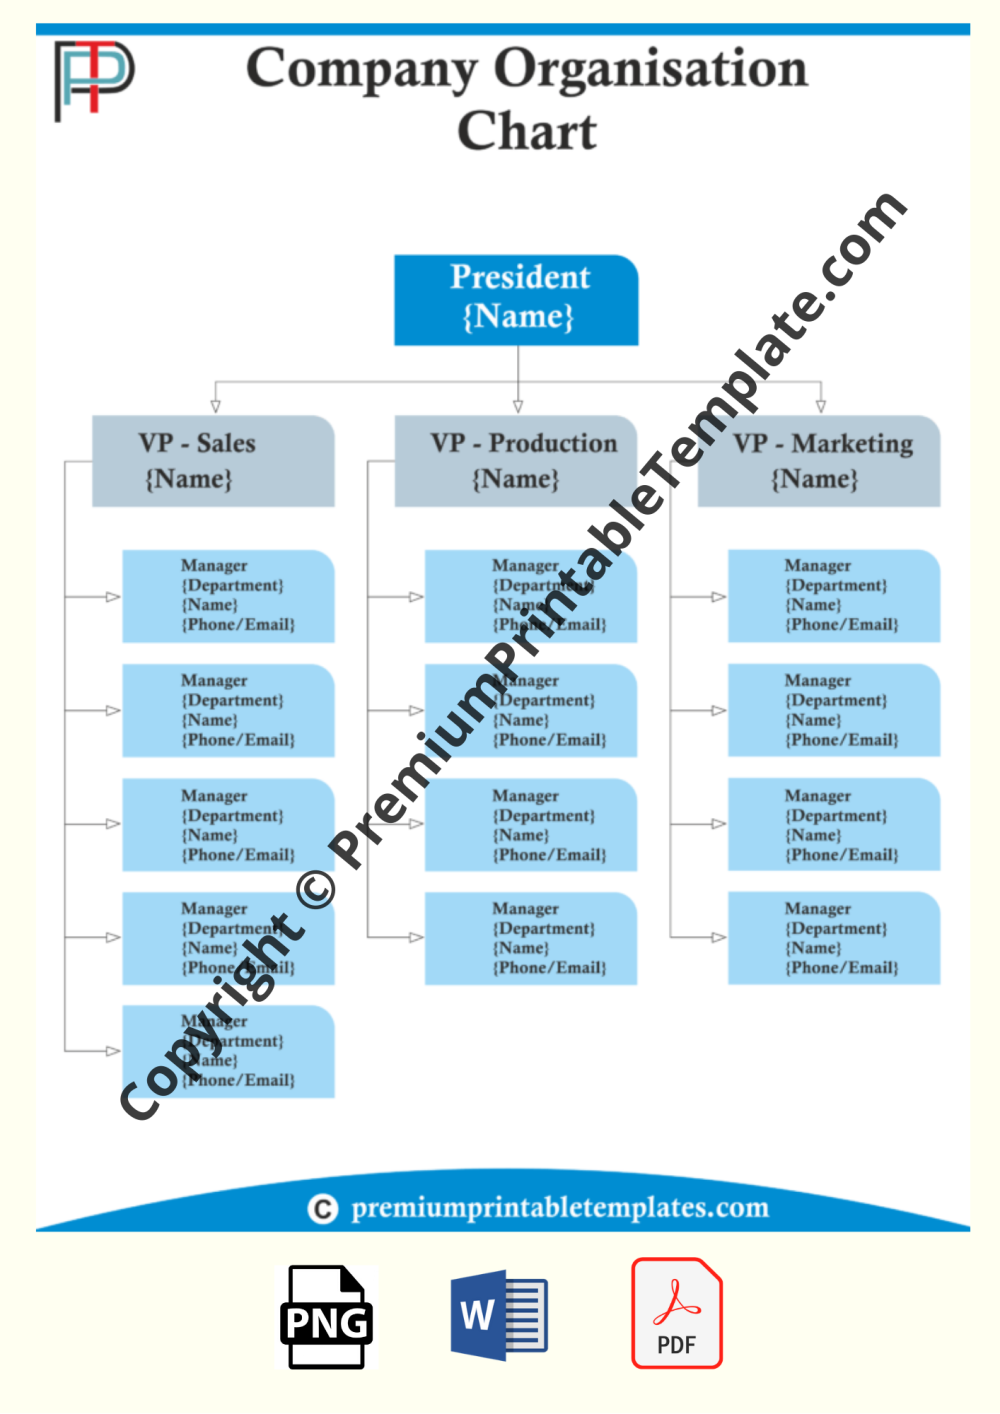 Company Organizational Chart